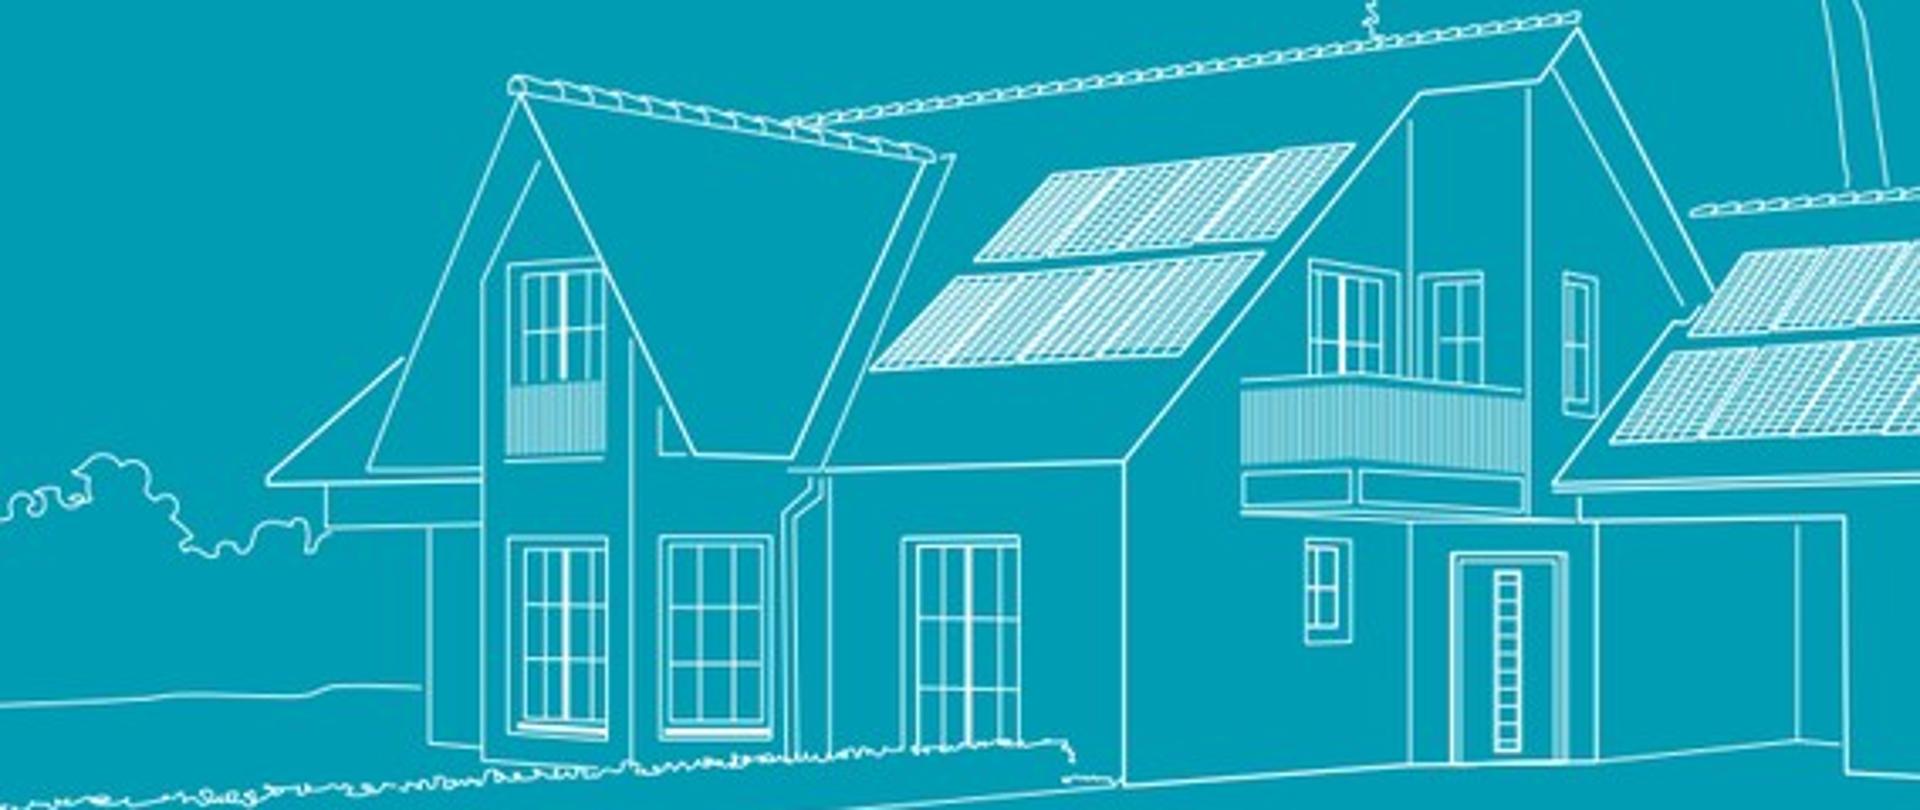 Grafika towarzysząca do artykułu - biały szkic budynku mieszkalnego na niebieskim tle wraz z napisem "Przewodnik prosumenta w gospodarstwie domowym"